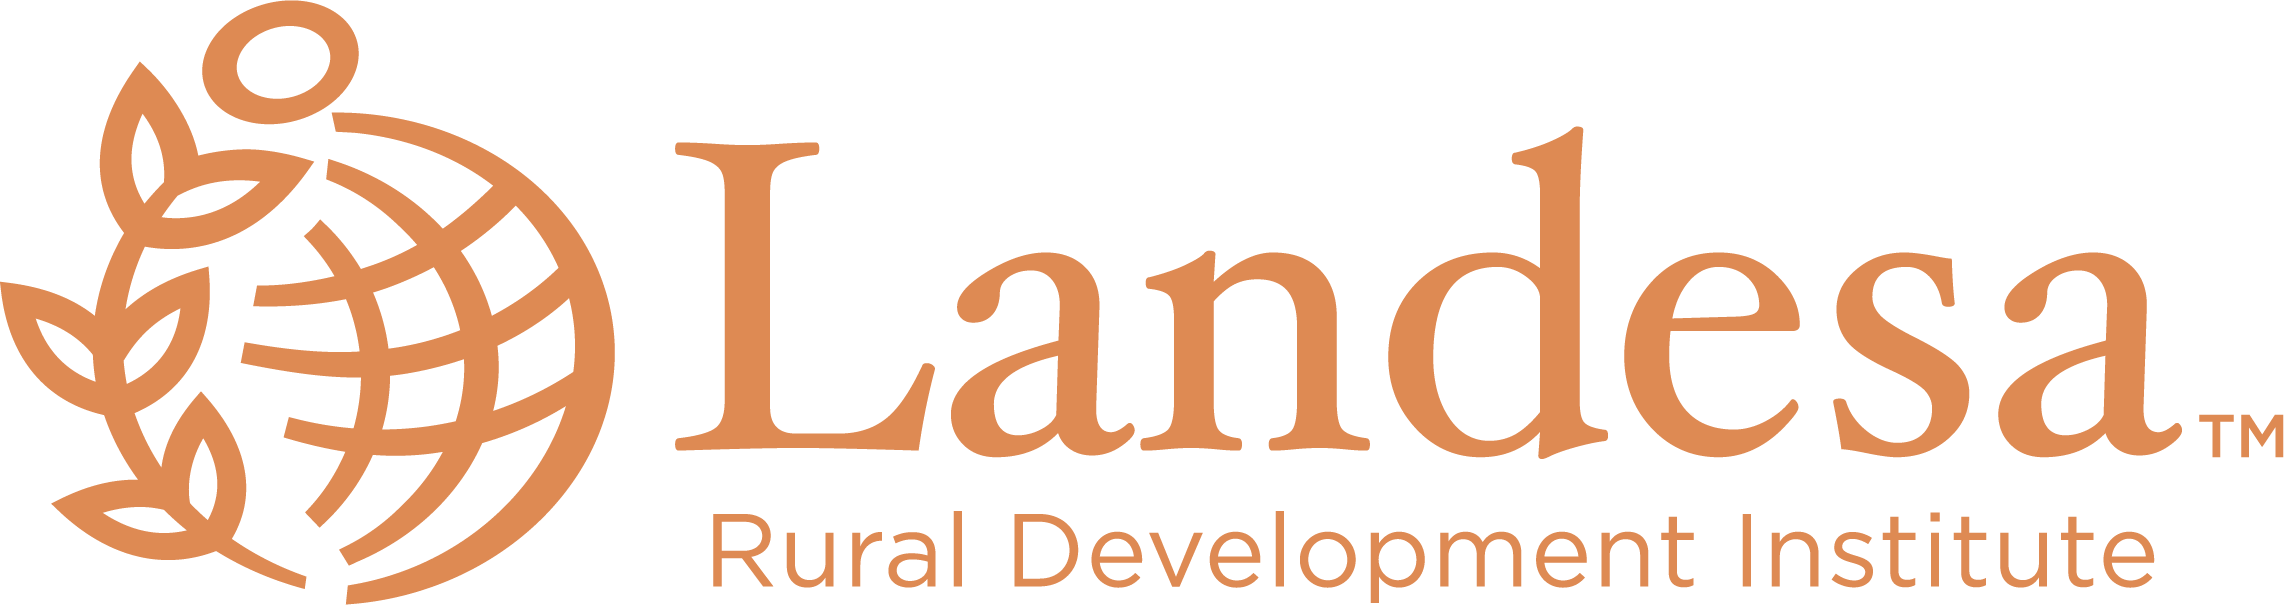 Landesa: Landesa là một tổ chức phi lợi nhuận chuyên về đất đai, giúp mọi người có được quyền sử dụng đất đai và tăng cường năng lực tự chủ. Hình ảnh có liên quan sẽ đưa bạn đến với những câu chuyện về những người đang được hỗ trợ bởi Landesa để có được quyền sở hữu đất đai và tạo ra một tương lai tươi sáng cho cộng đồng của họ. Hãy xem và học hỏi những giá trị xuất sắc của Landesa.